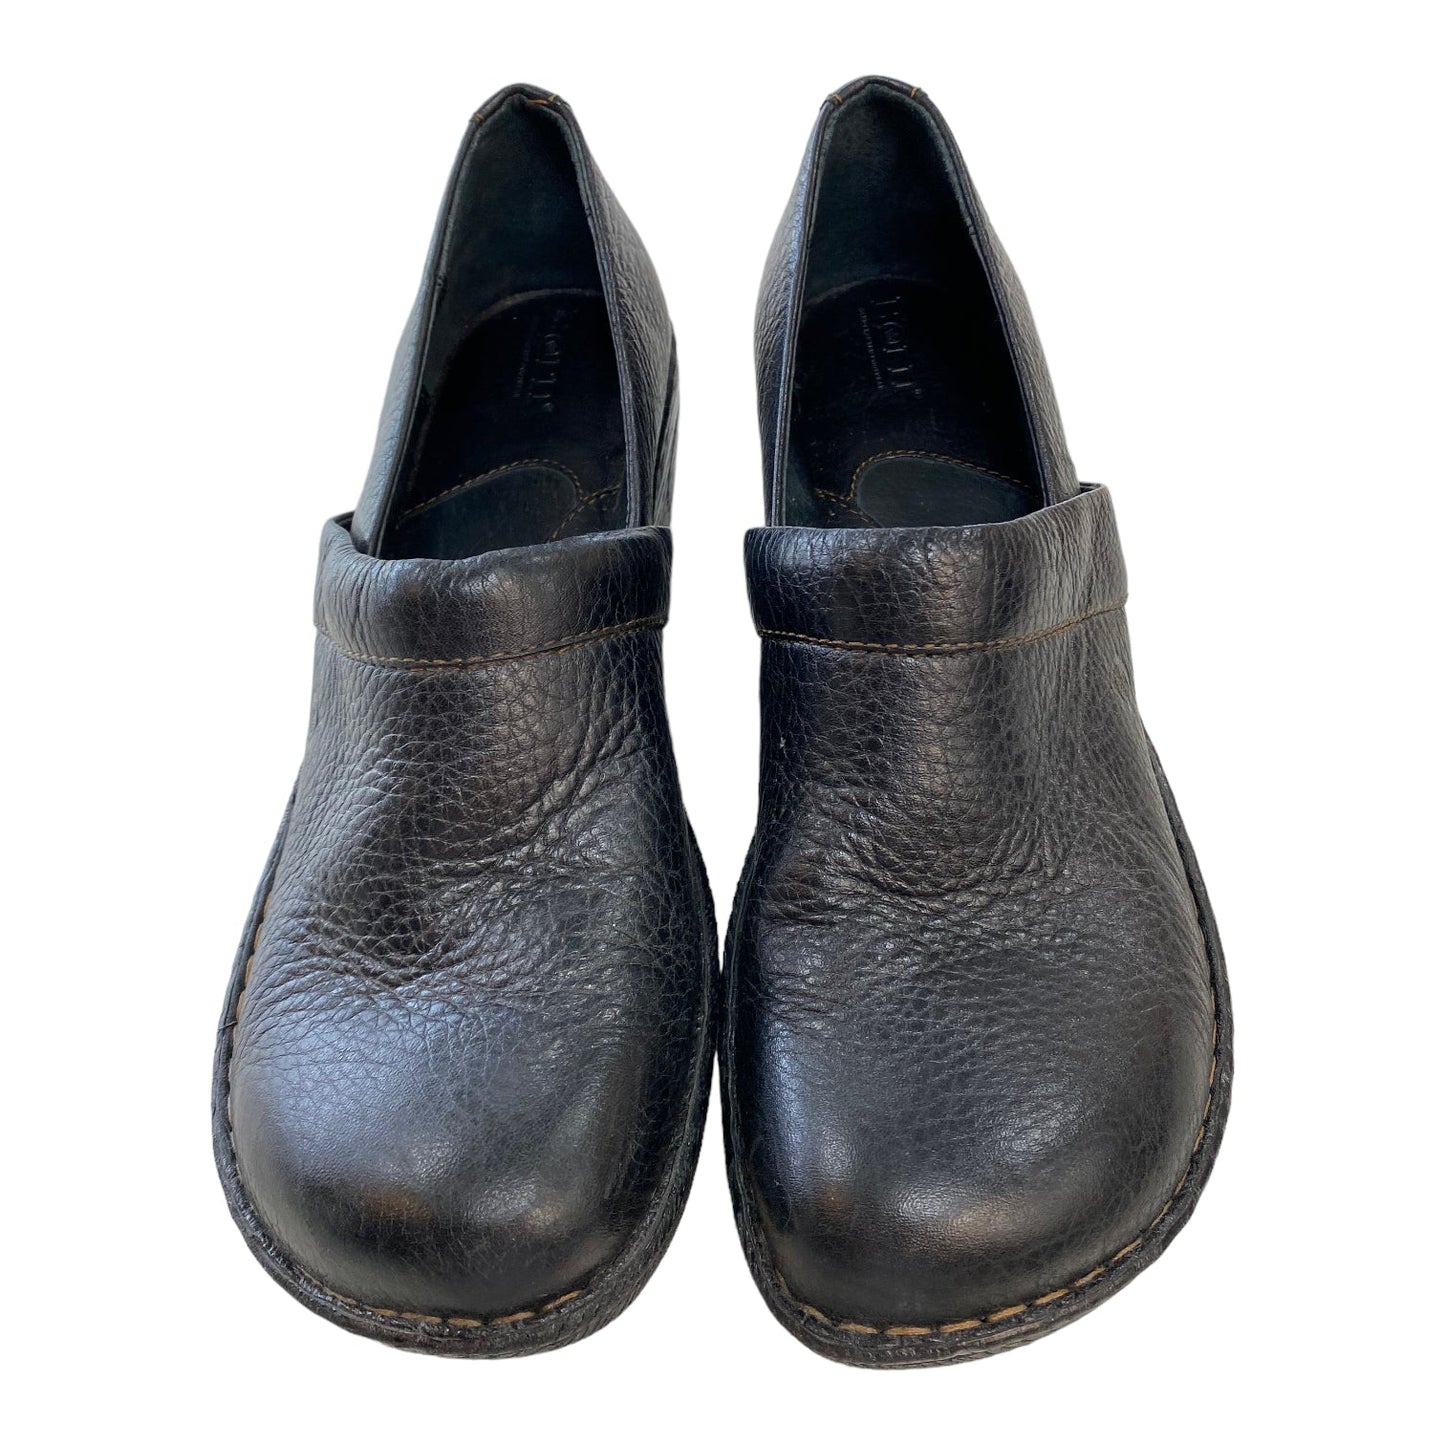 Black Shoes Flats Born, Size 11